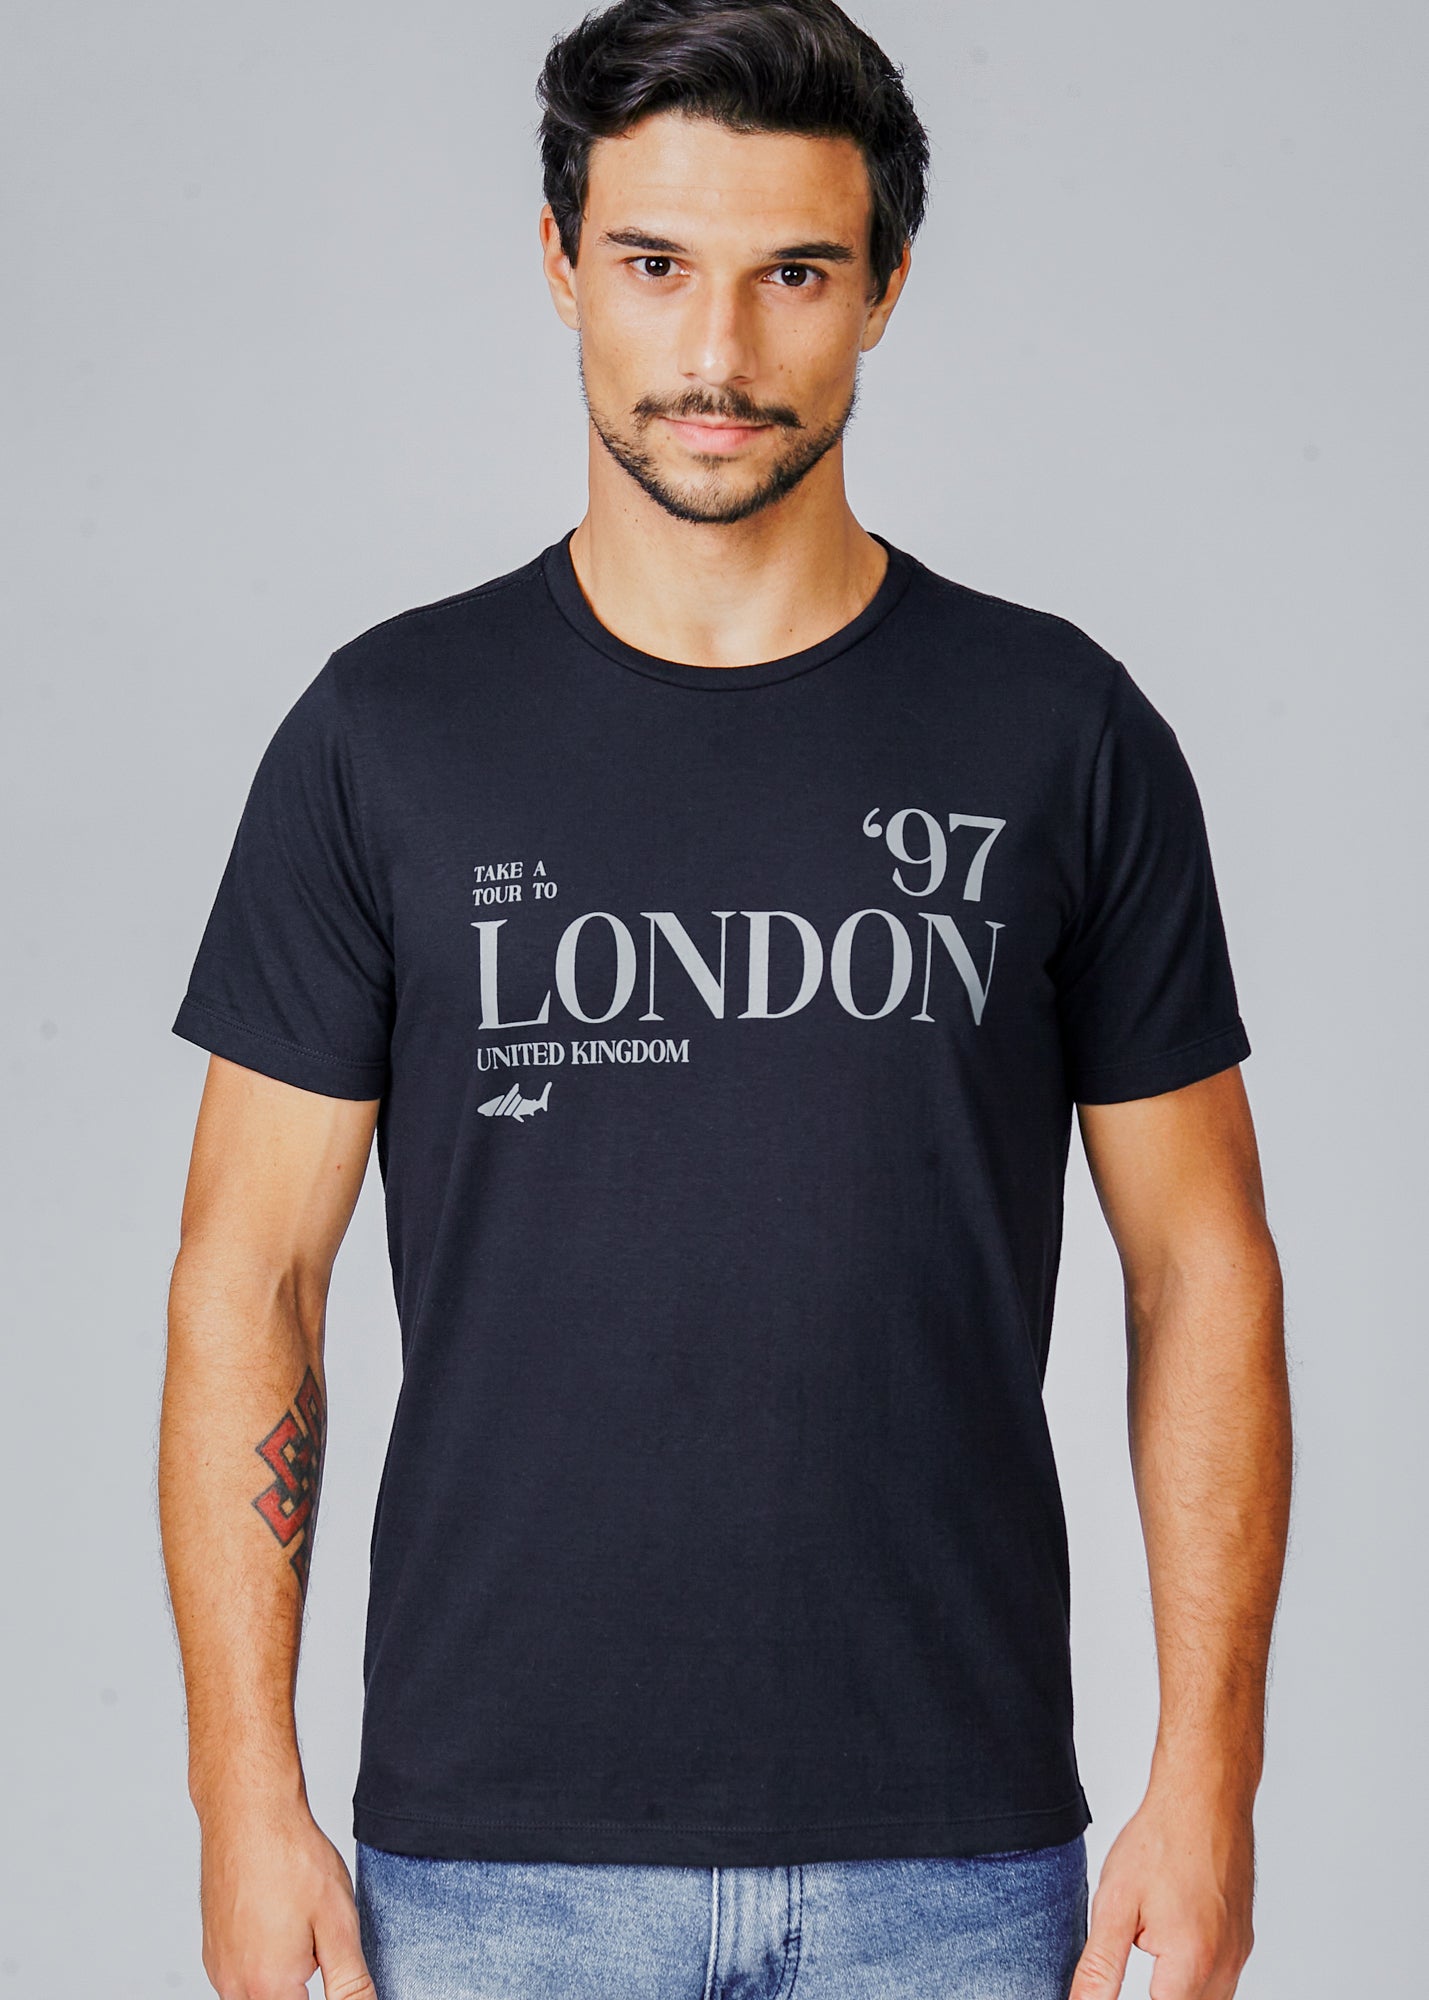 Camiseta Estampada London - Preta